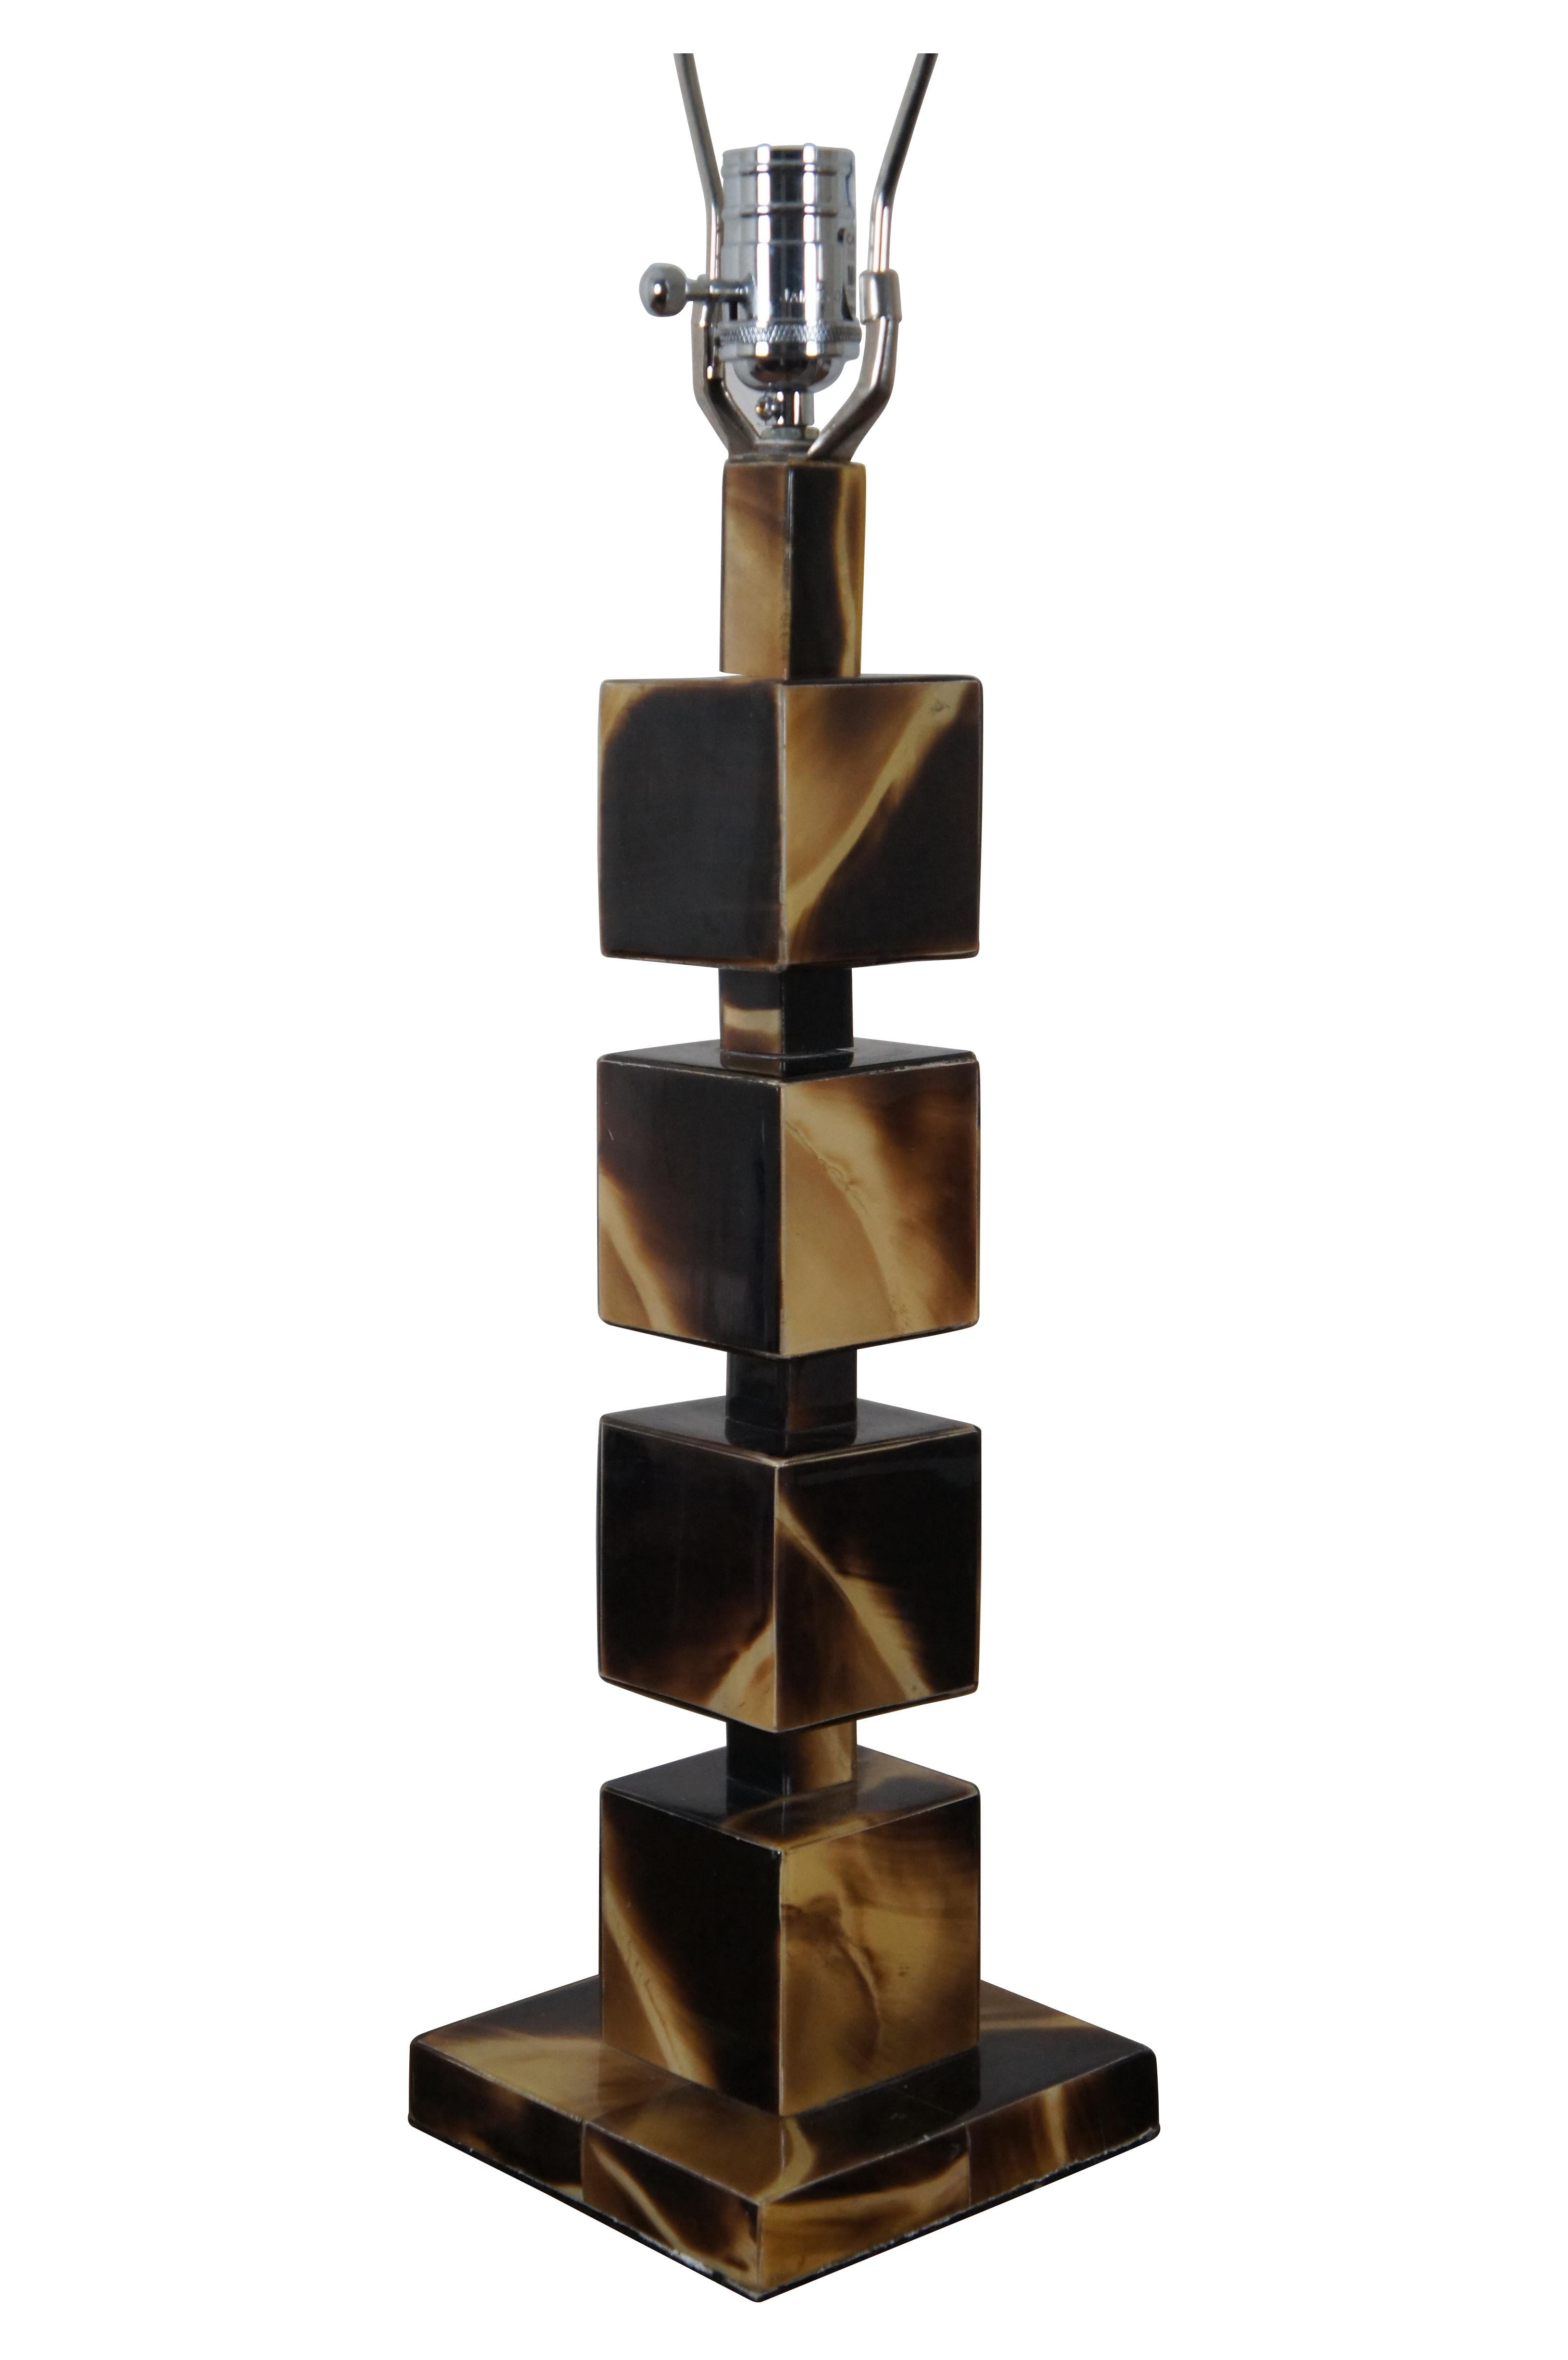 Vintage Jamie Young Acryl Horn geometrische Tischlampe mit einem Stapel von fünf Würfel / Blöcke auf einem quadratischen Sockel.  Inklusive Harfe und rechteckigem schwarzem Endstück.

Abmessungen:
6